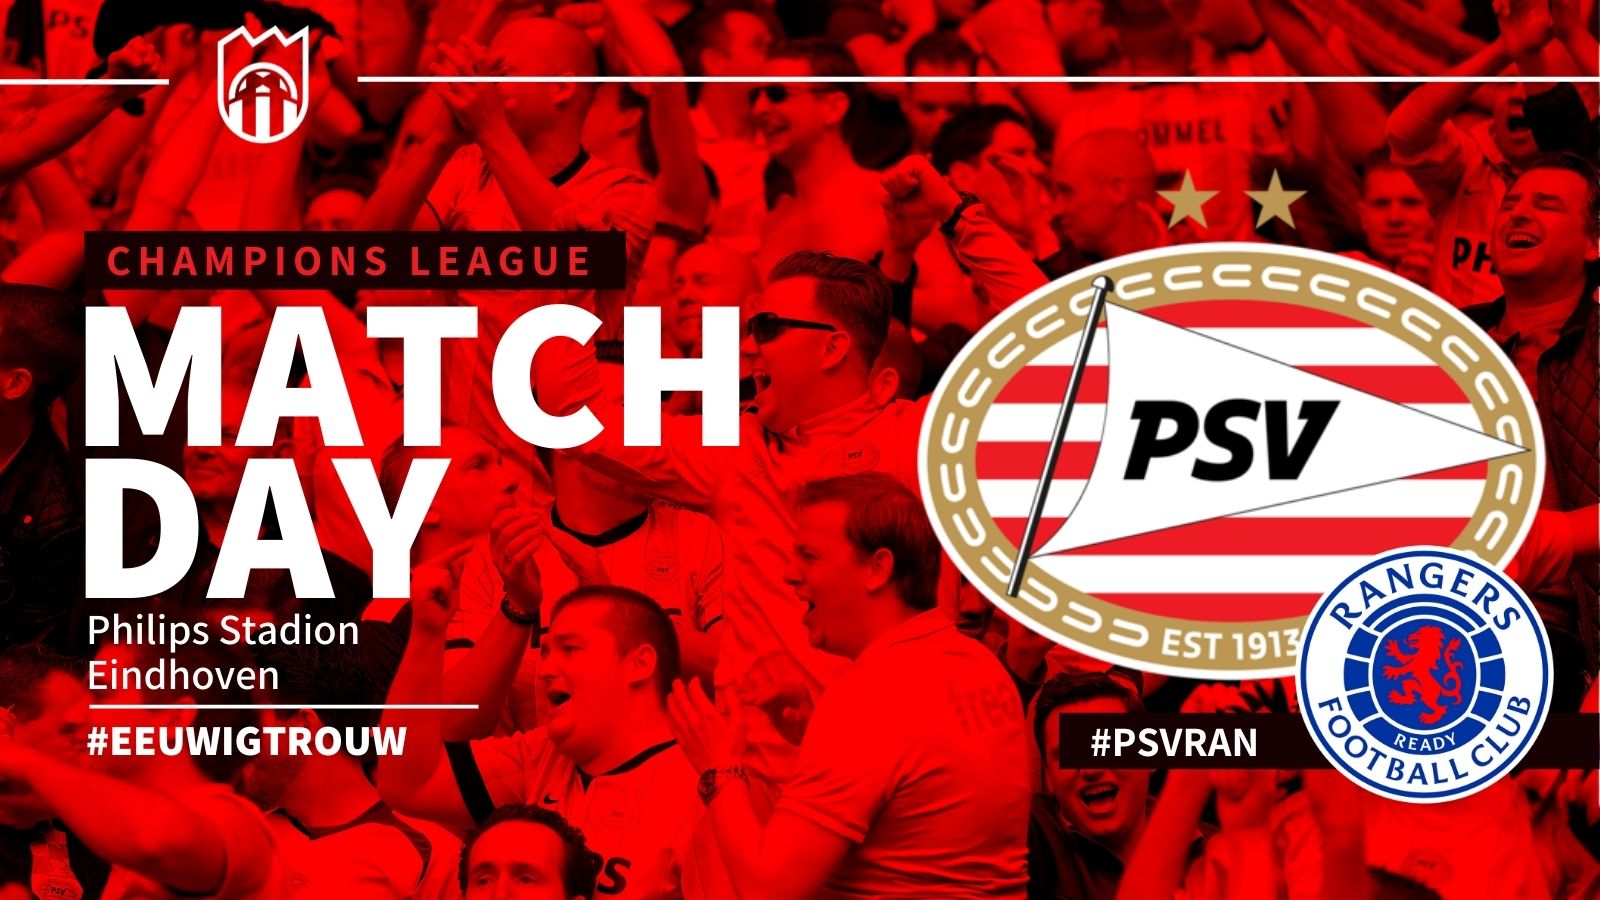 Champions League : PSV - Rangers FC (5 - 1)